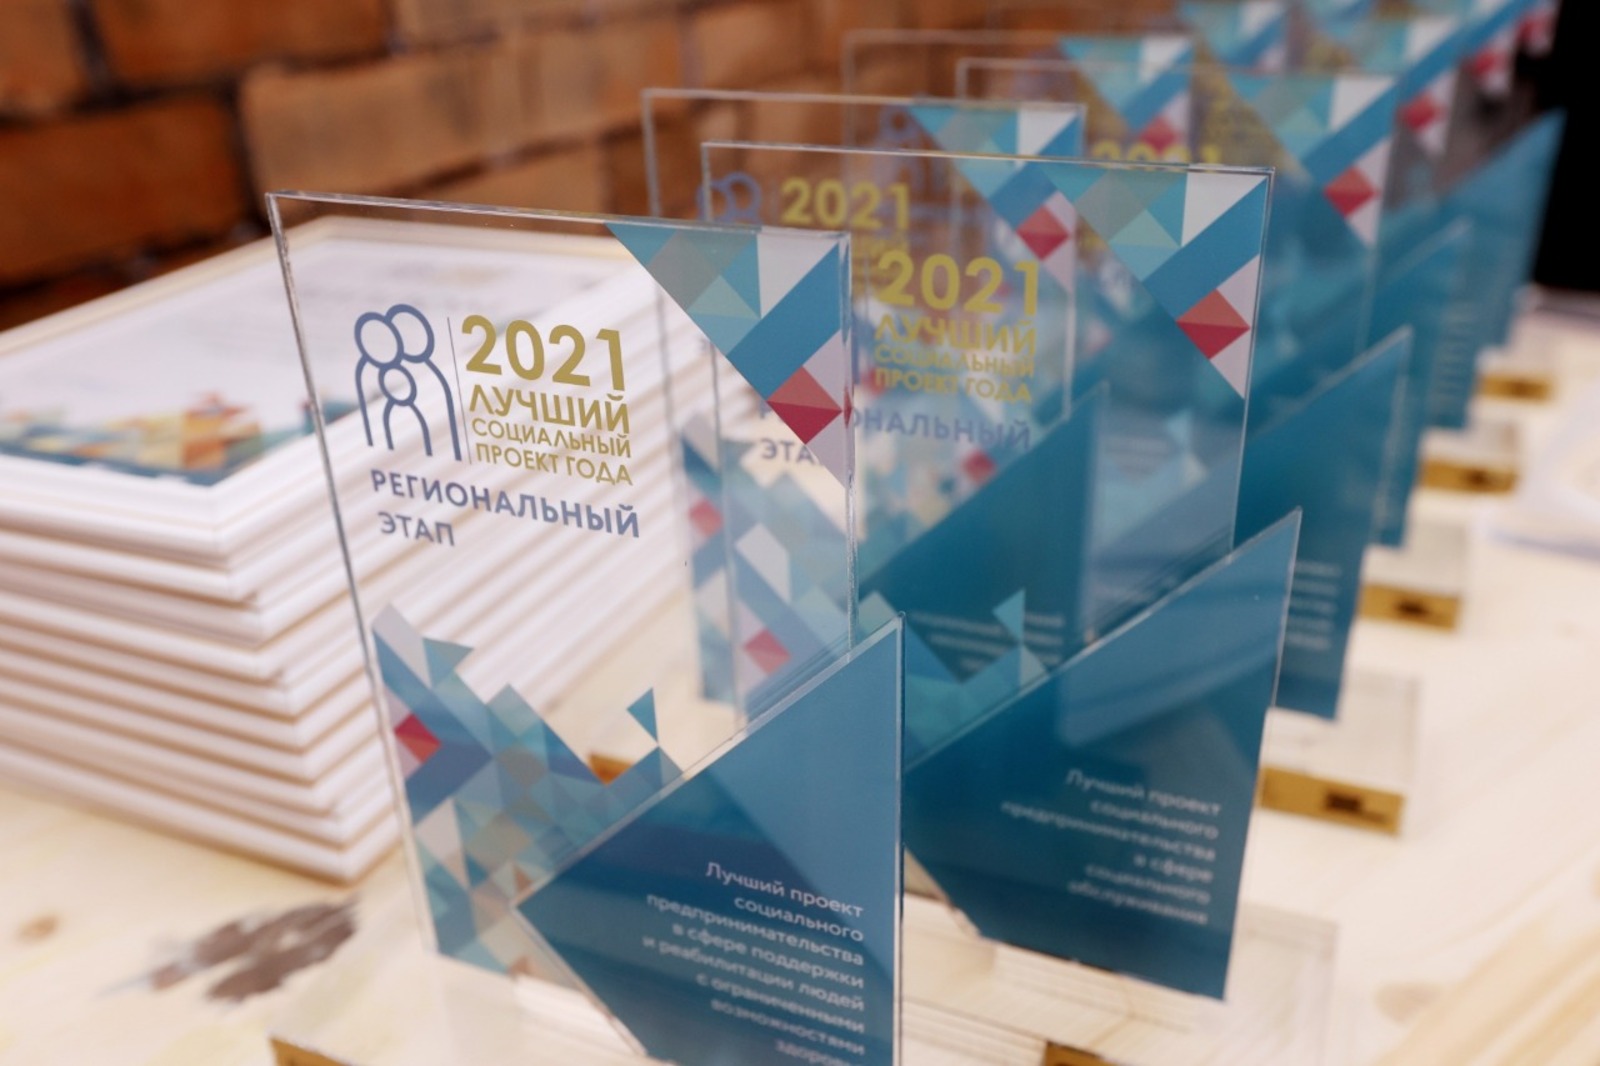 Определены победители регионального этапа конкурса «Лучший социальный проект года» 2021